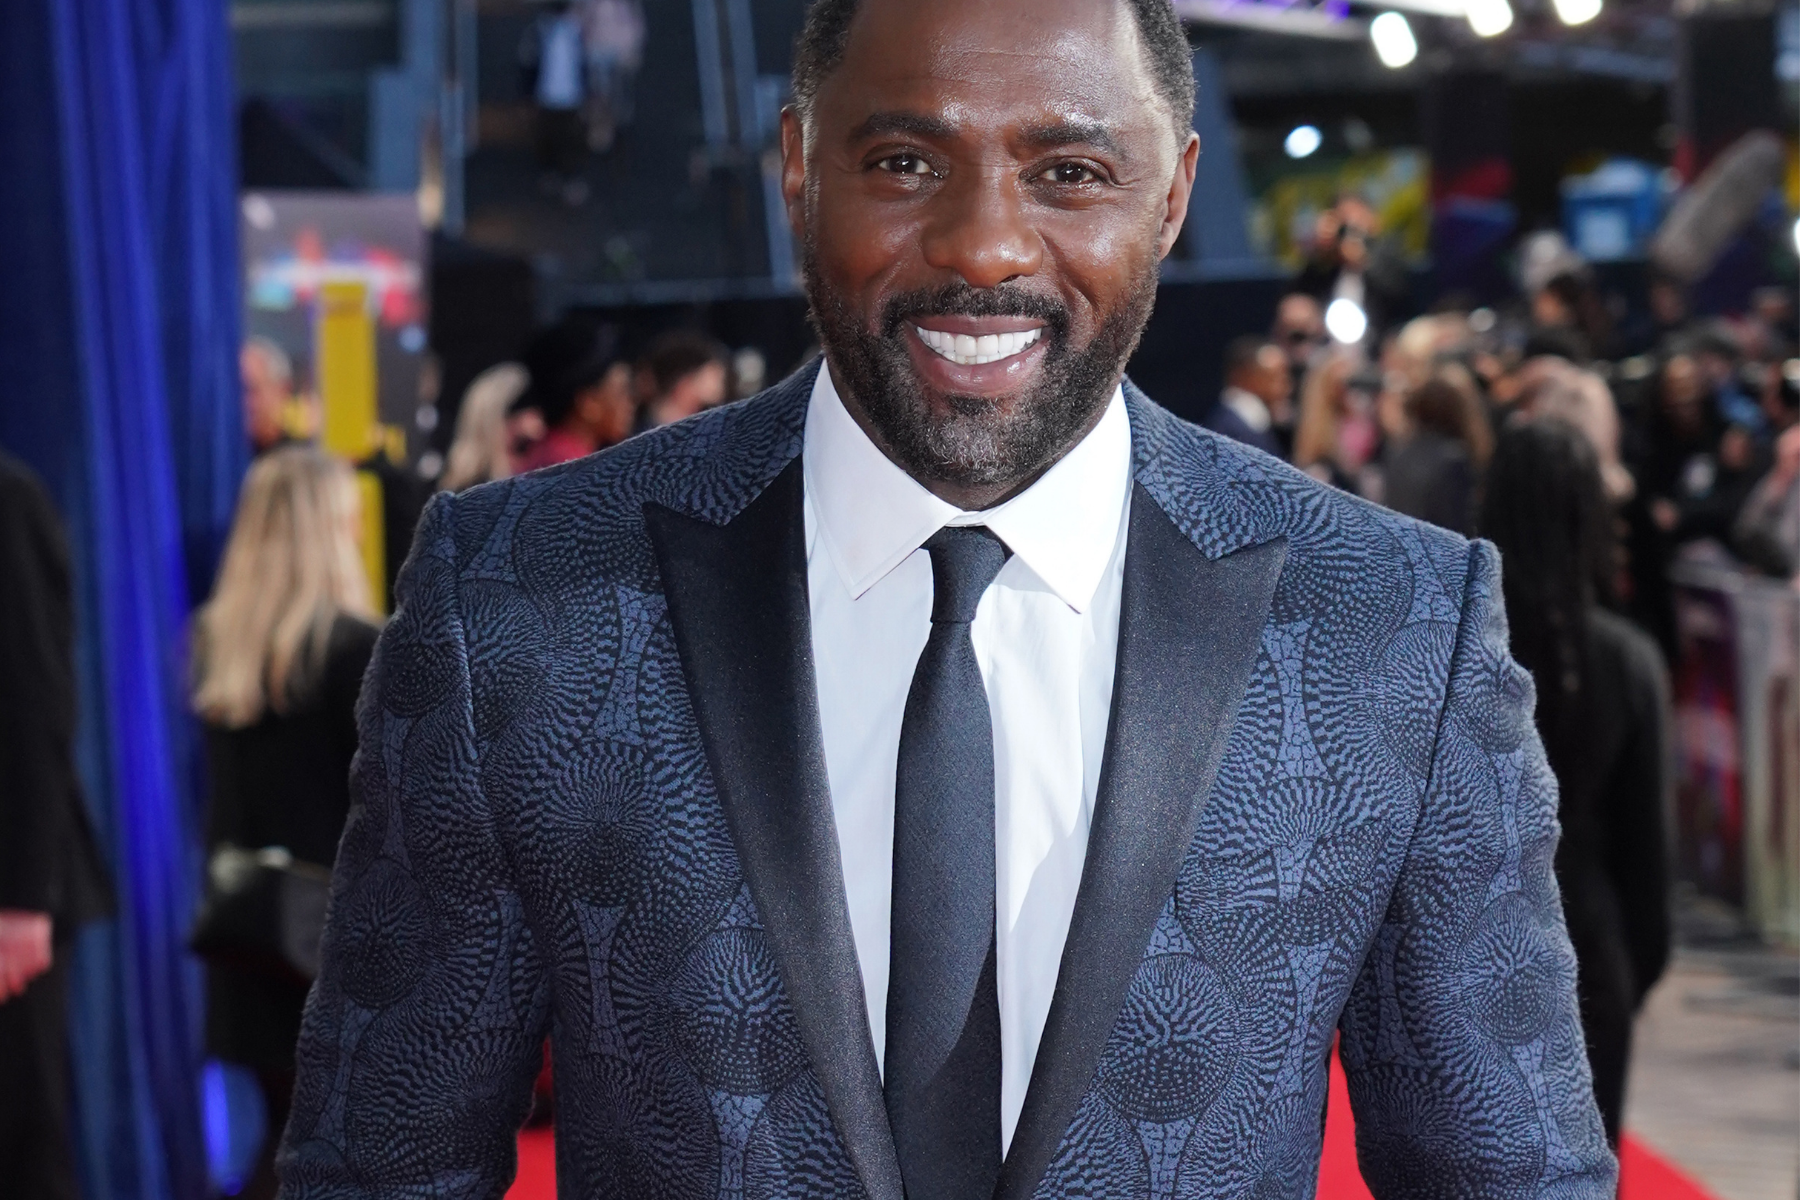 Los productores de James Bond dicen que Idris Elba es 'parte de la conversación' para ser el próximo 007